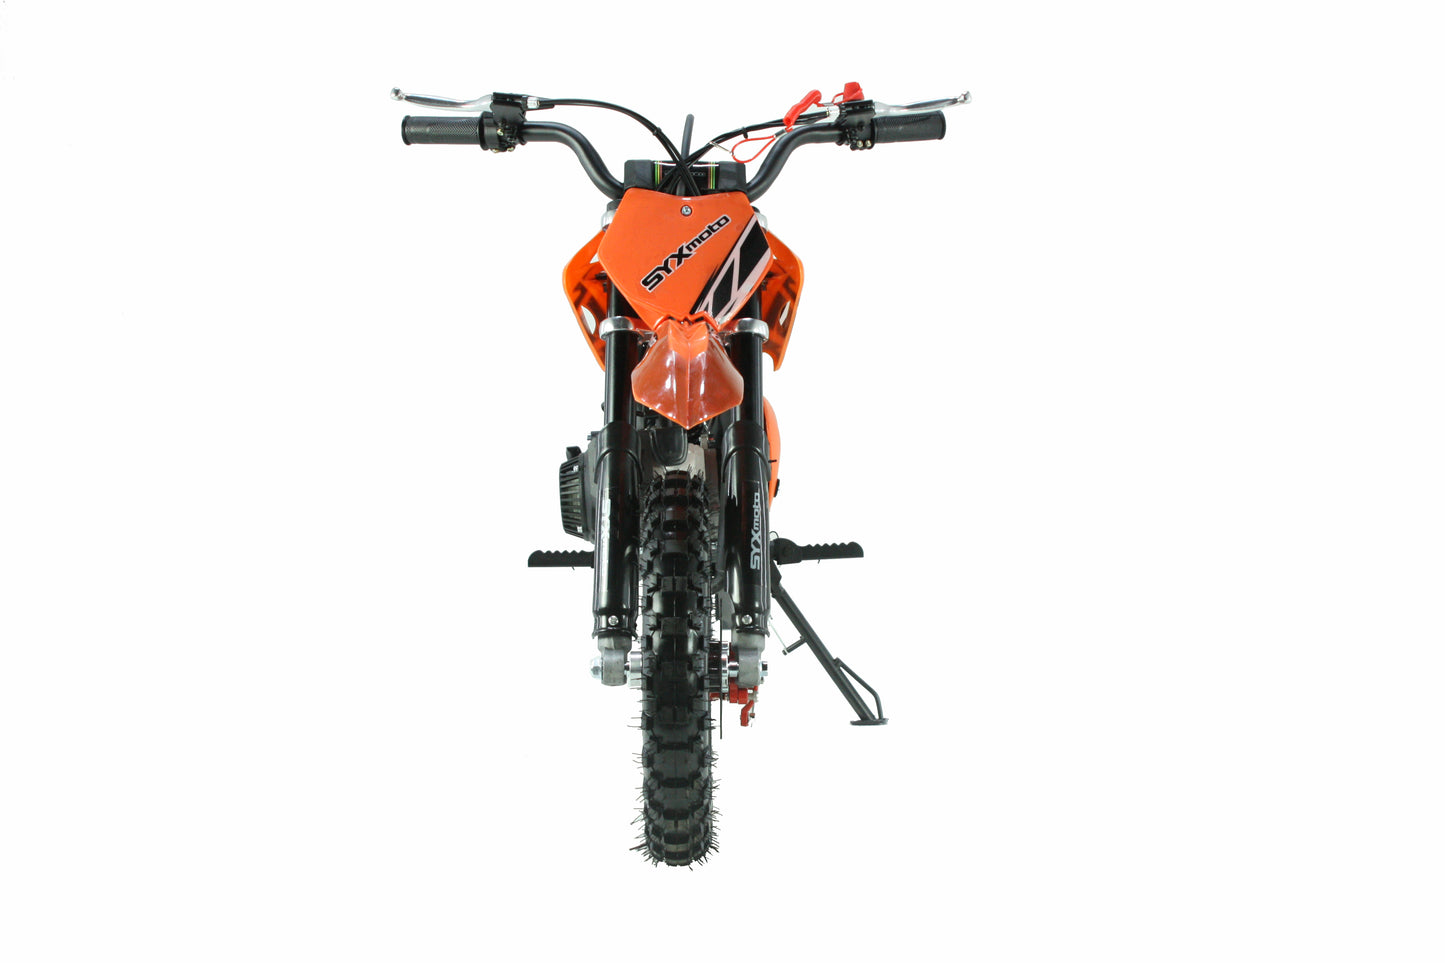 SYX MOTO Holeshot 50cc Pull Start Mini Dirt Bike, Orange - SYX MOTO